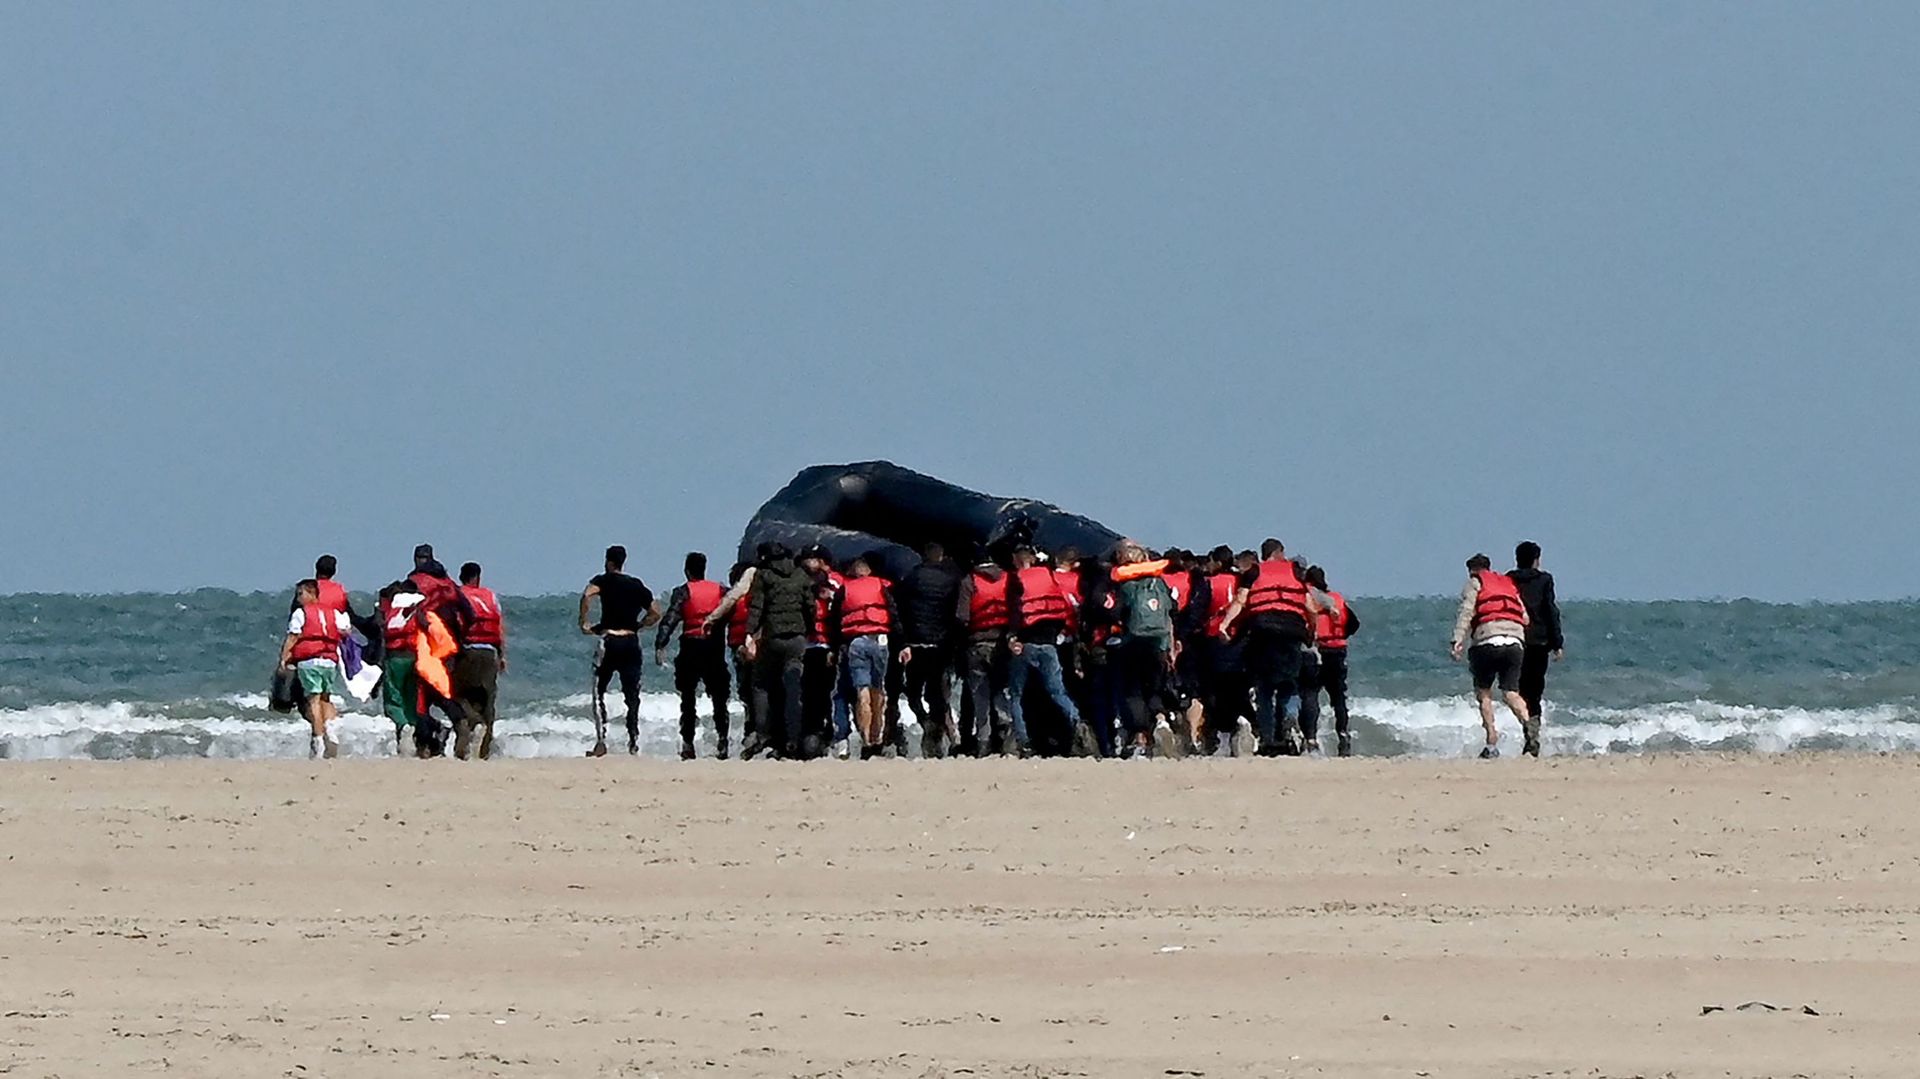 Image d'illustration : des migrants poussent un bateau pneumatique sur une étendue de sable en direction de l'eau, près de Gravelines, dans le nord de la France, le 25 août 2022, avant de tenter de traverser la Manche vers la Grande-Bretagne.